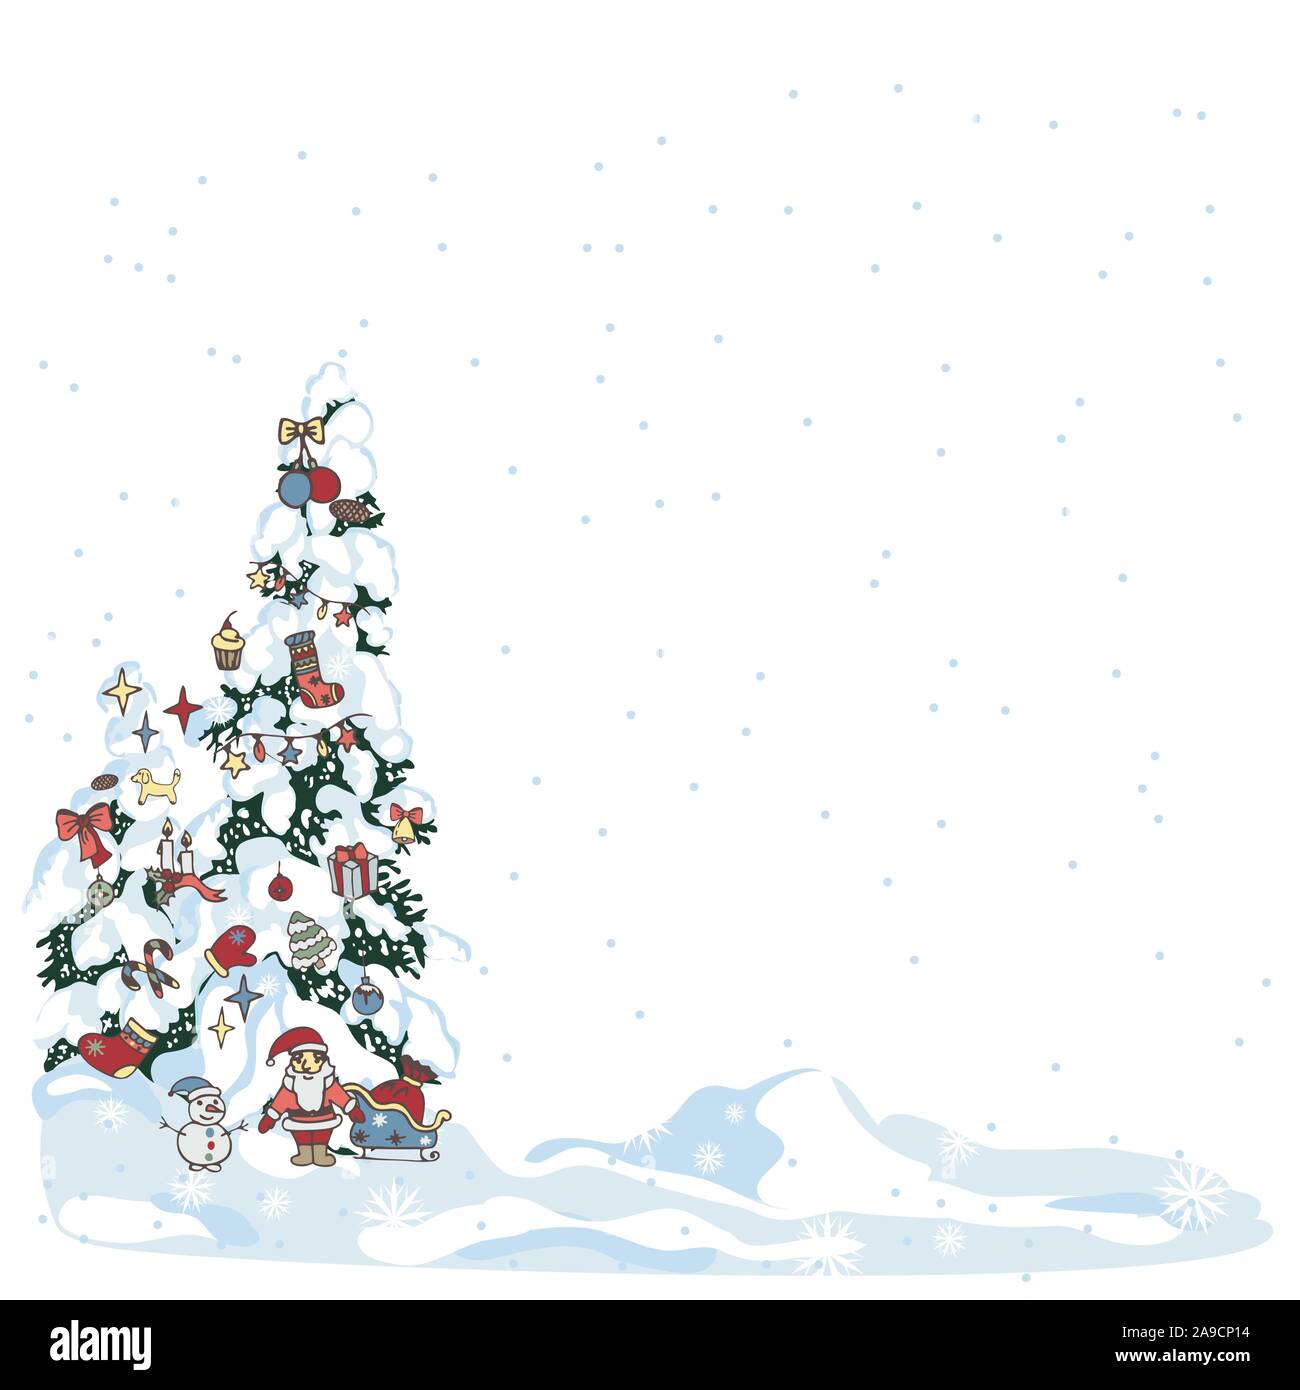 Albero Di Natale Pino O Abete.Snow Albero Di Natale Inverno Evergreen Albero Di Natale Con Pino Decorato Con Giocattoli Di Abete